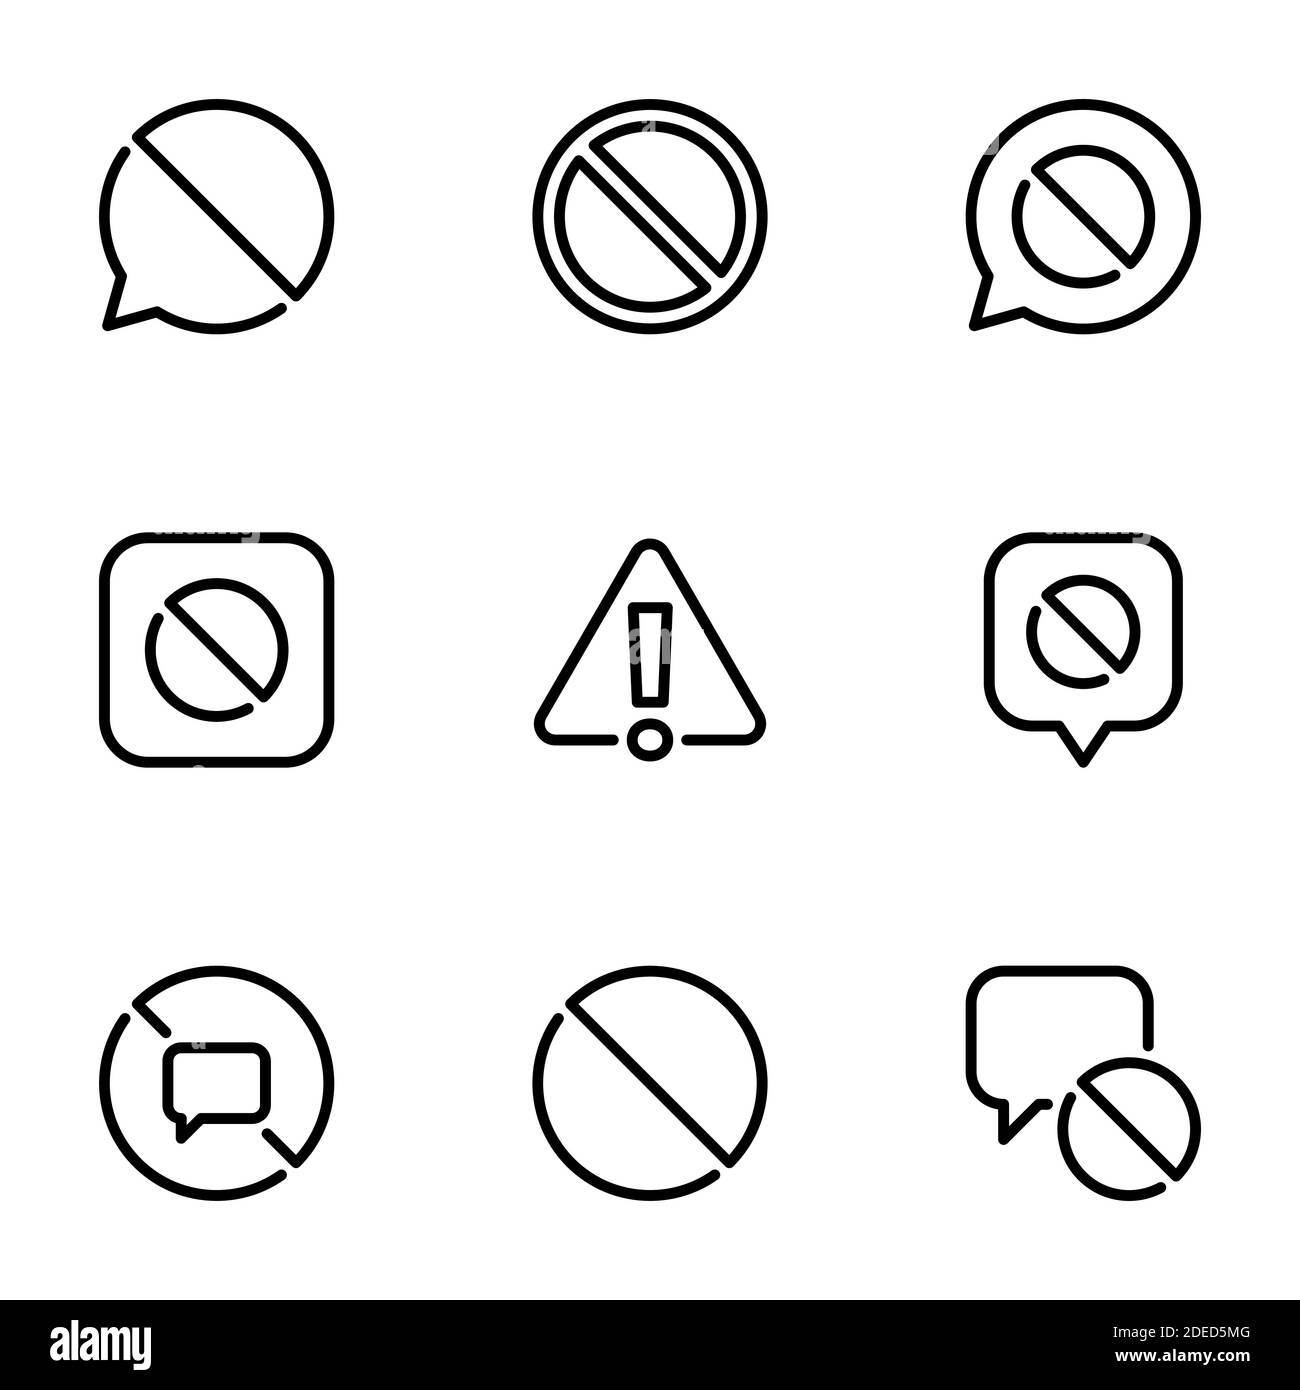 Insieme di icone nere isolate su sfondo bianco, sul tema Ban Illustrazione Vettoriale